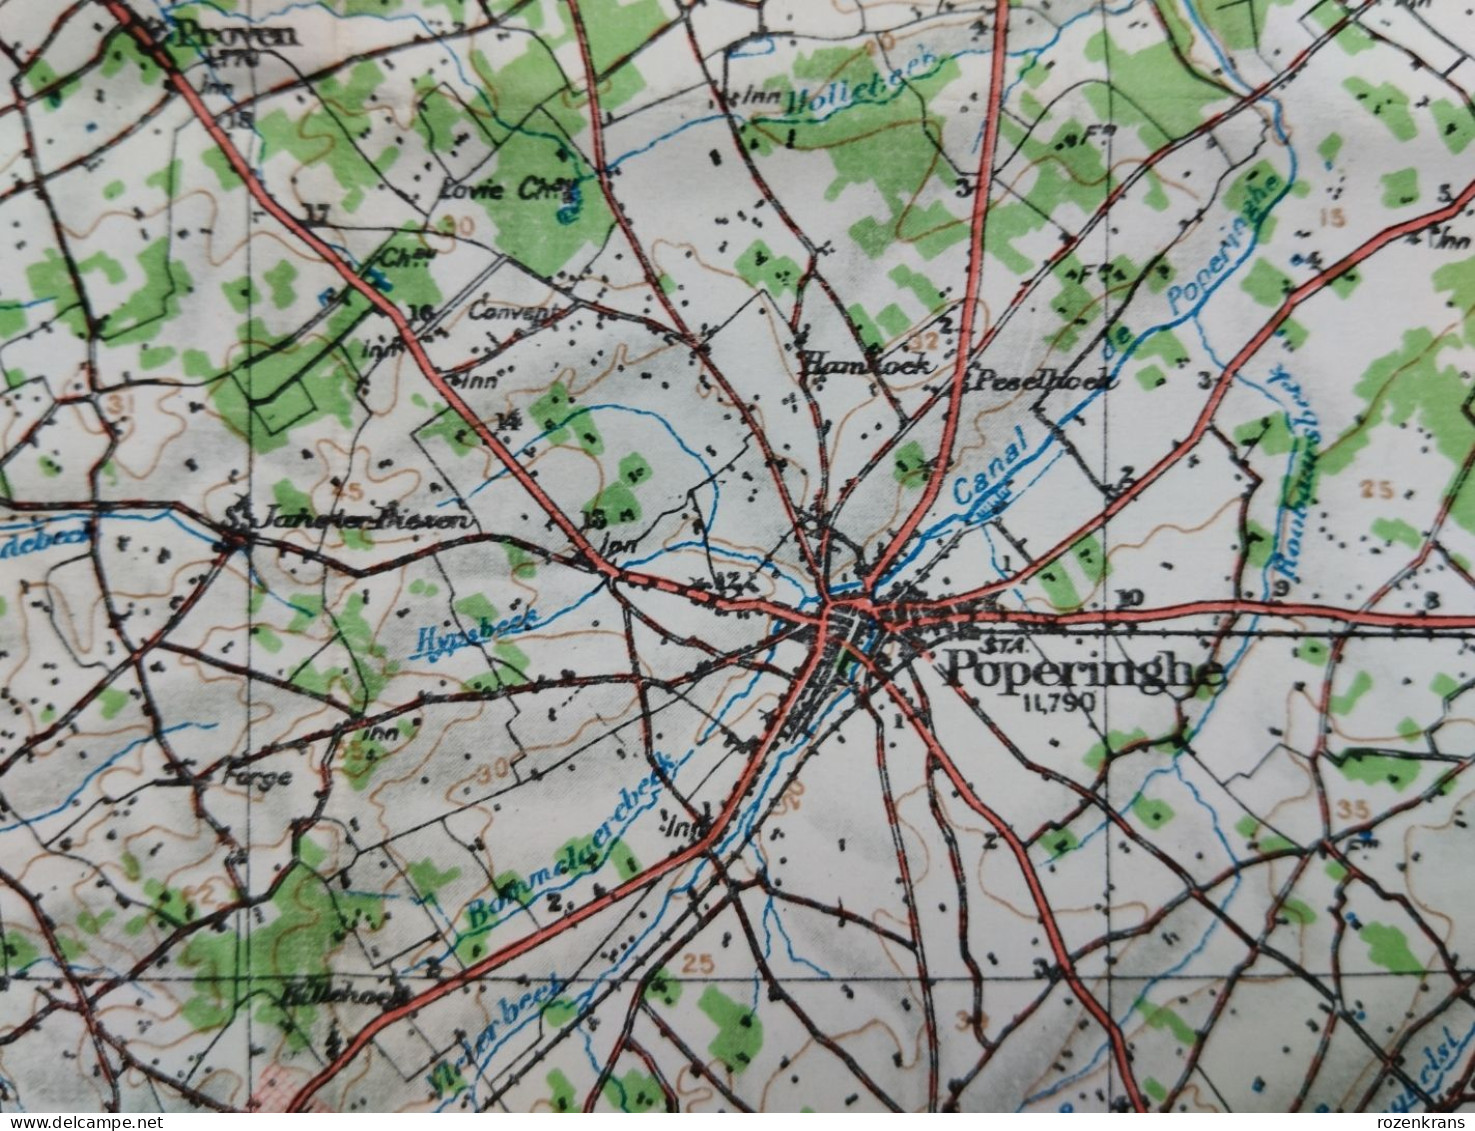 Carte Topographique Militaire UK War Office 1917 World War 1 WW1 Hazebrouck Ieper Poperinge Armentieres Cassel Kemmel - Topographische Karten